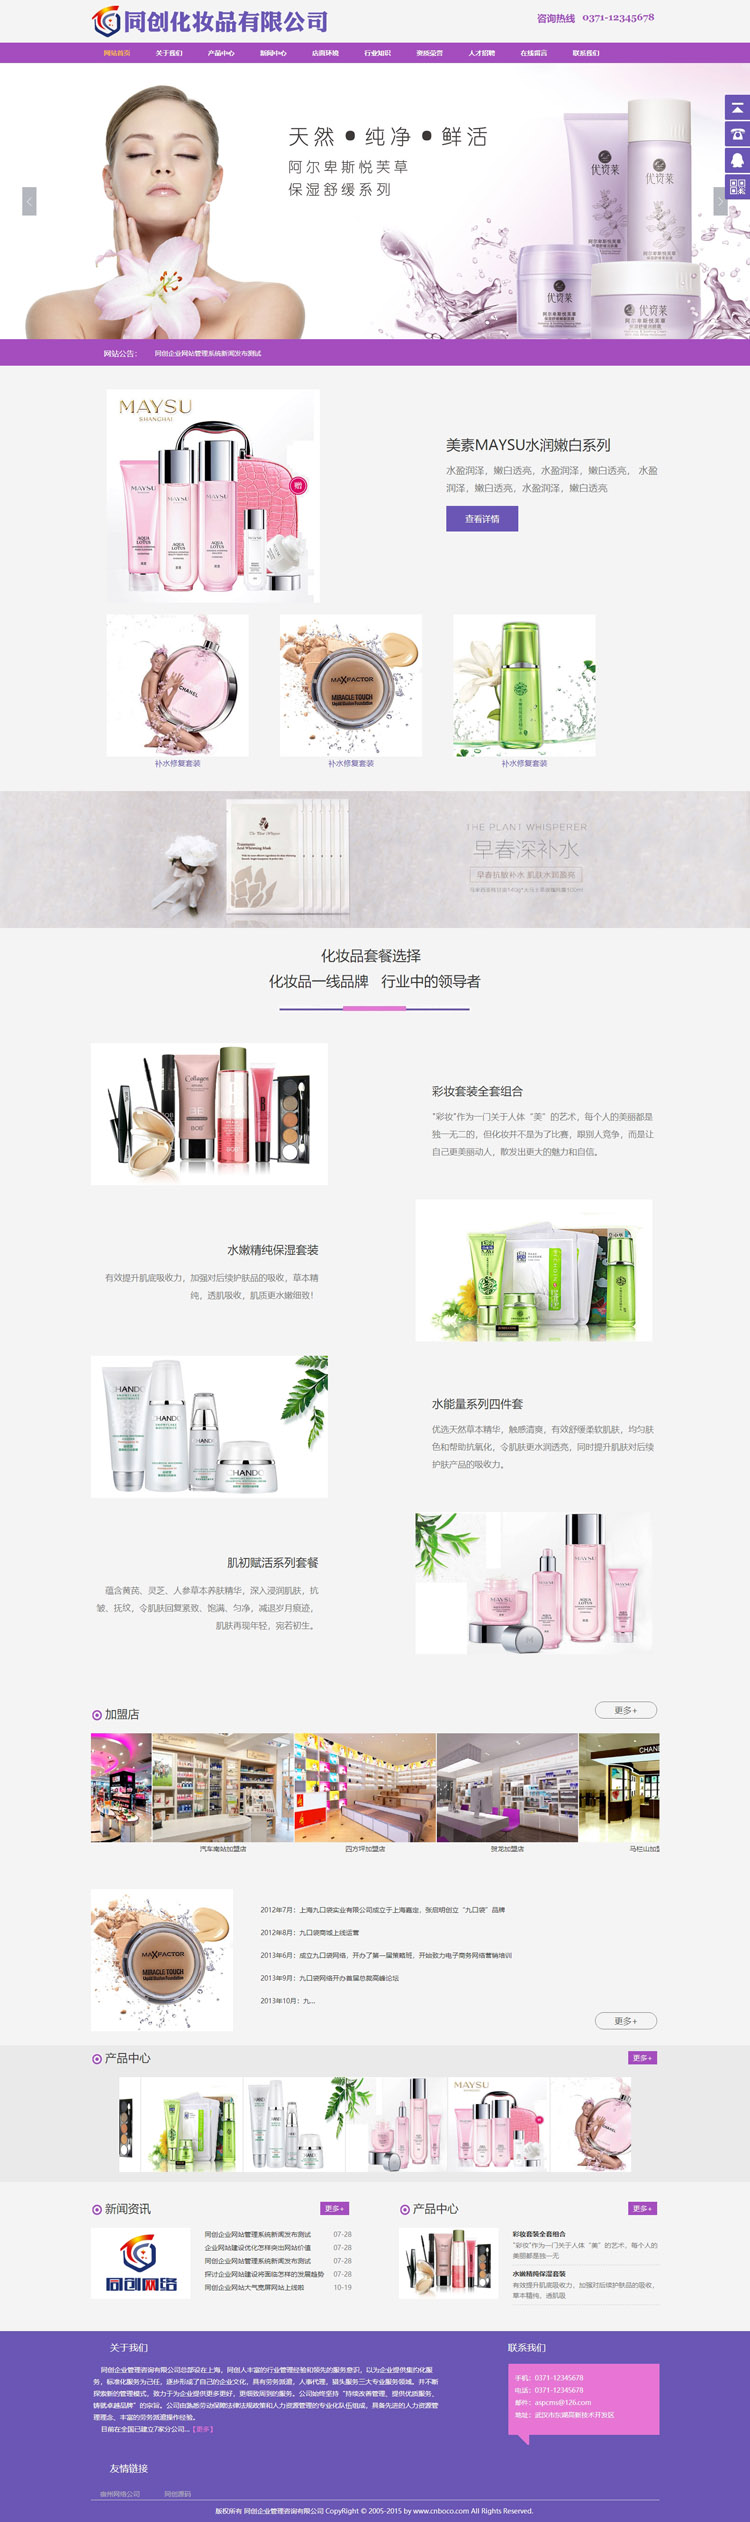 化妆品网站源代码程序-ZP011-2